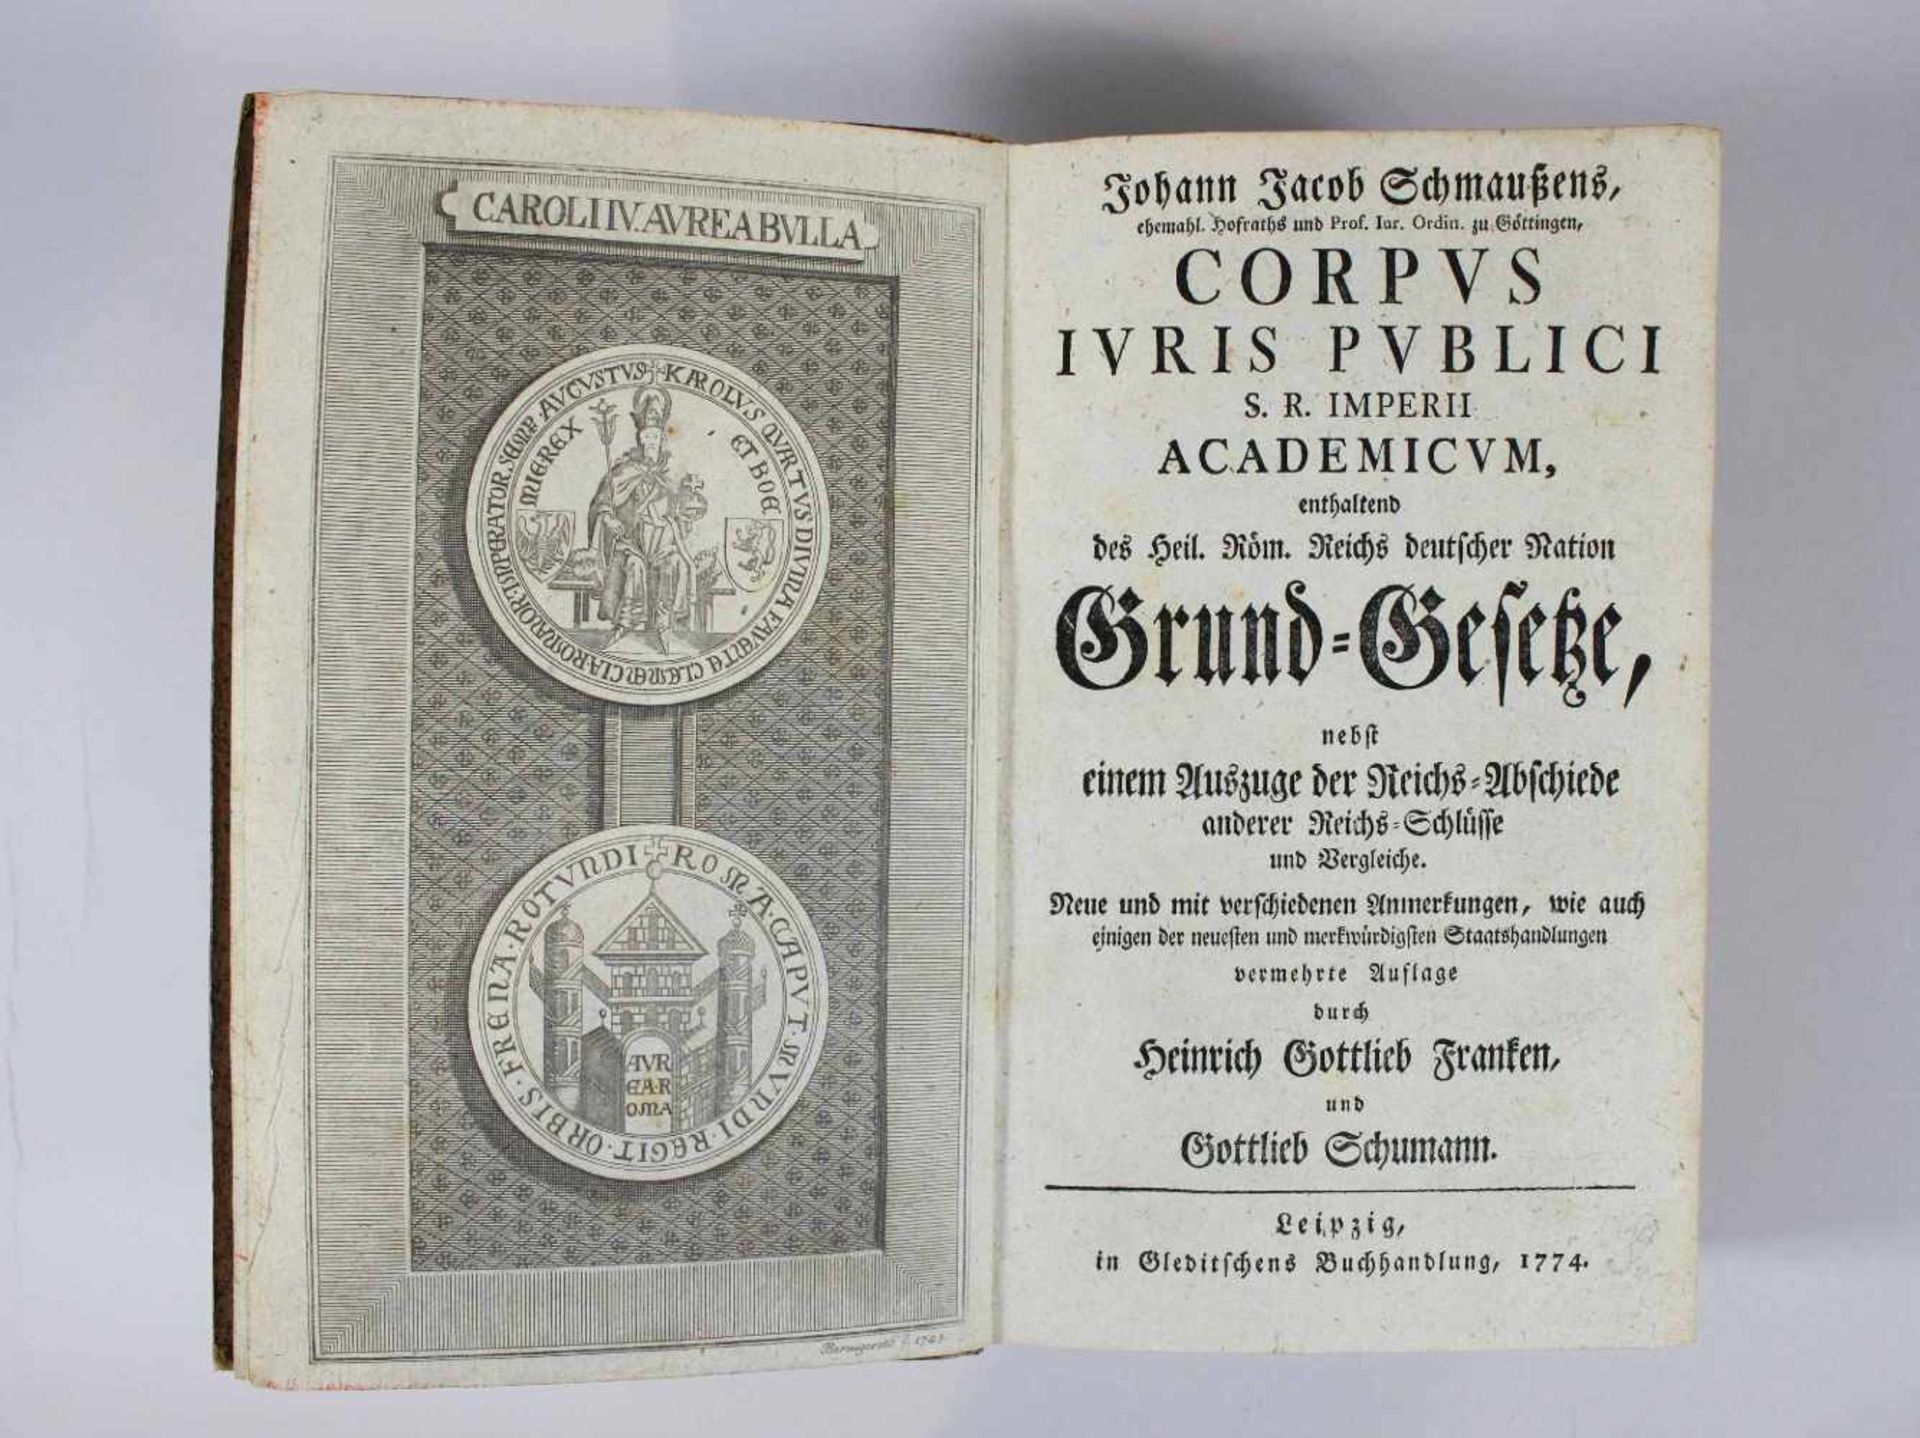 Johann Jacob Schmaussens - Corpus iuris publici S. R. imperii academicum: enthaltend des Heil.